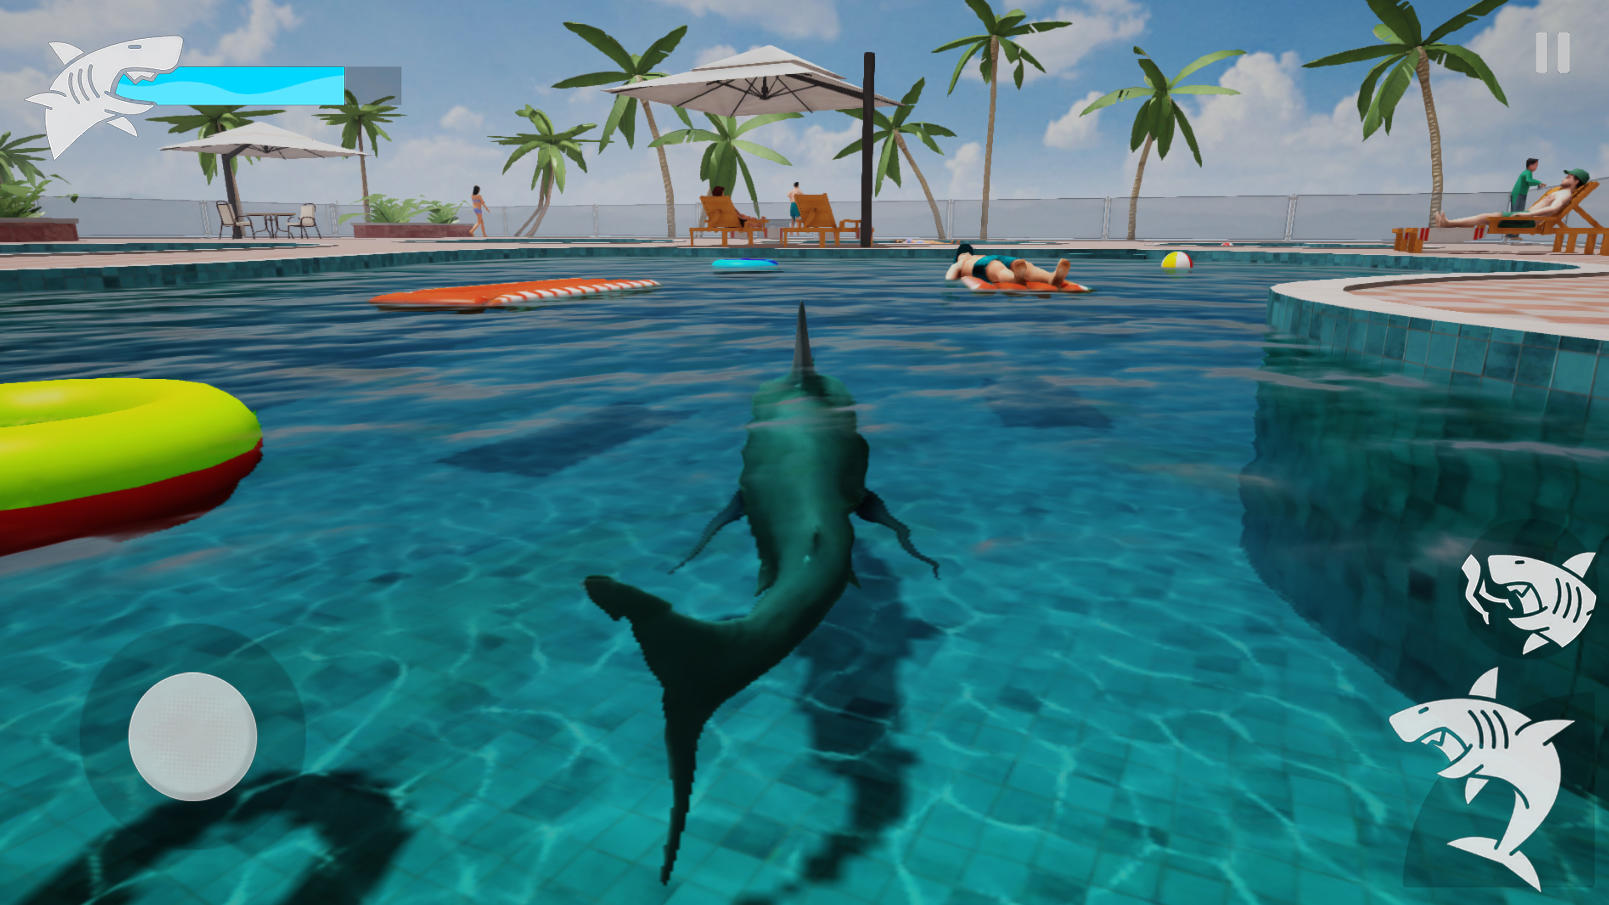 Screenshot 1 of Rage de requin 1